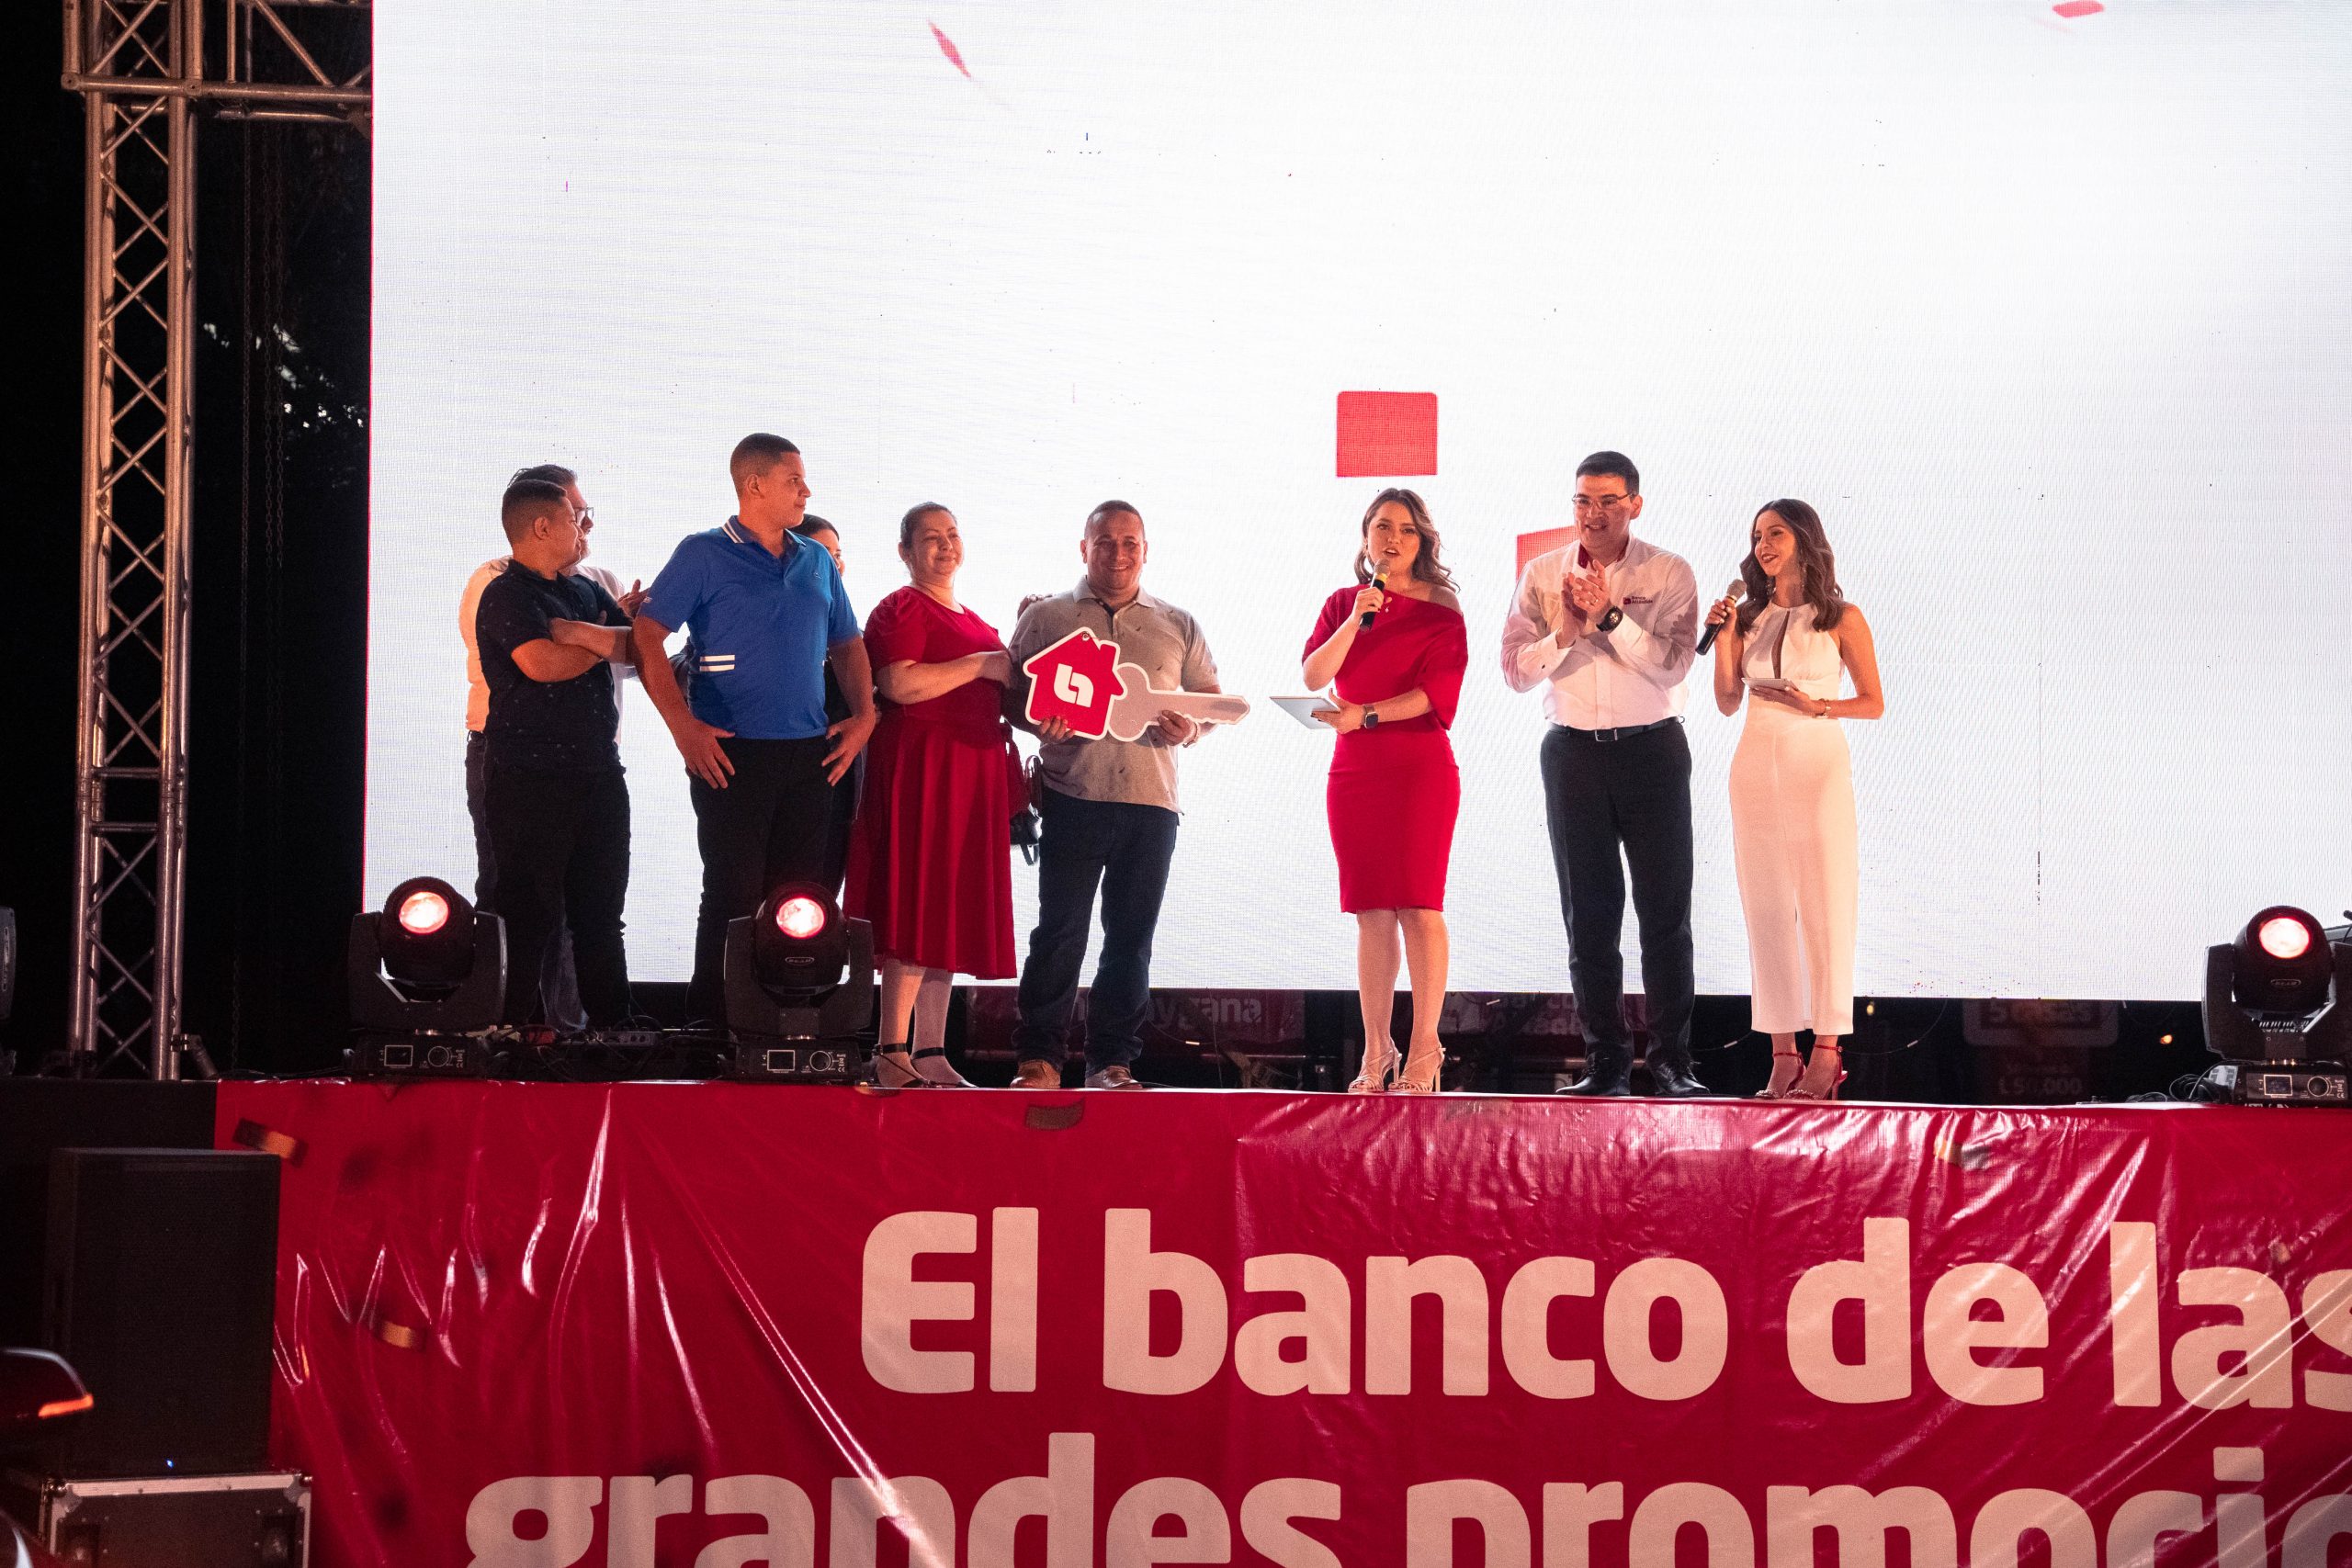 Banco Atlántida, el banco de las grandes promociones, celebró su 110 Aniversario premiando la lealtad de sus clientes